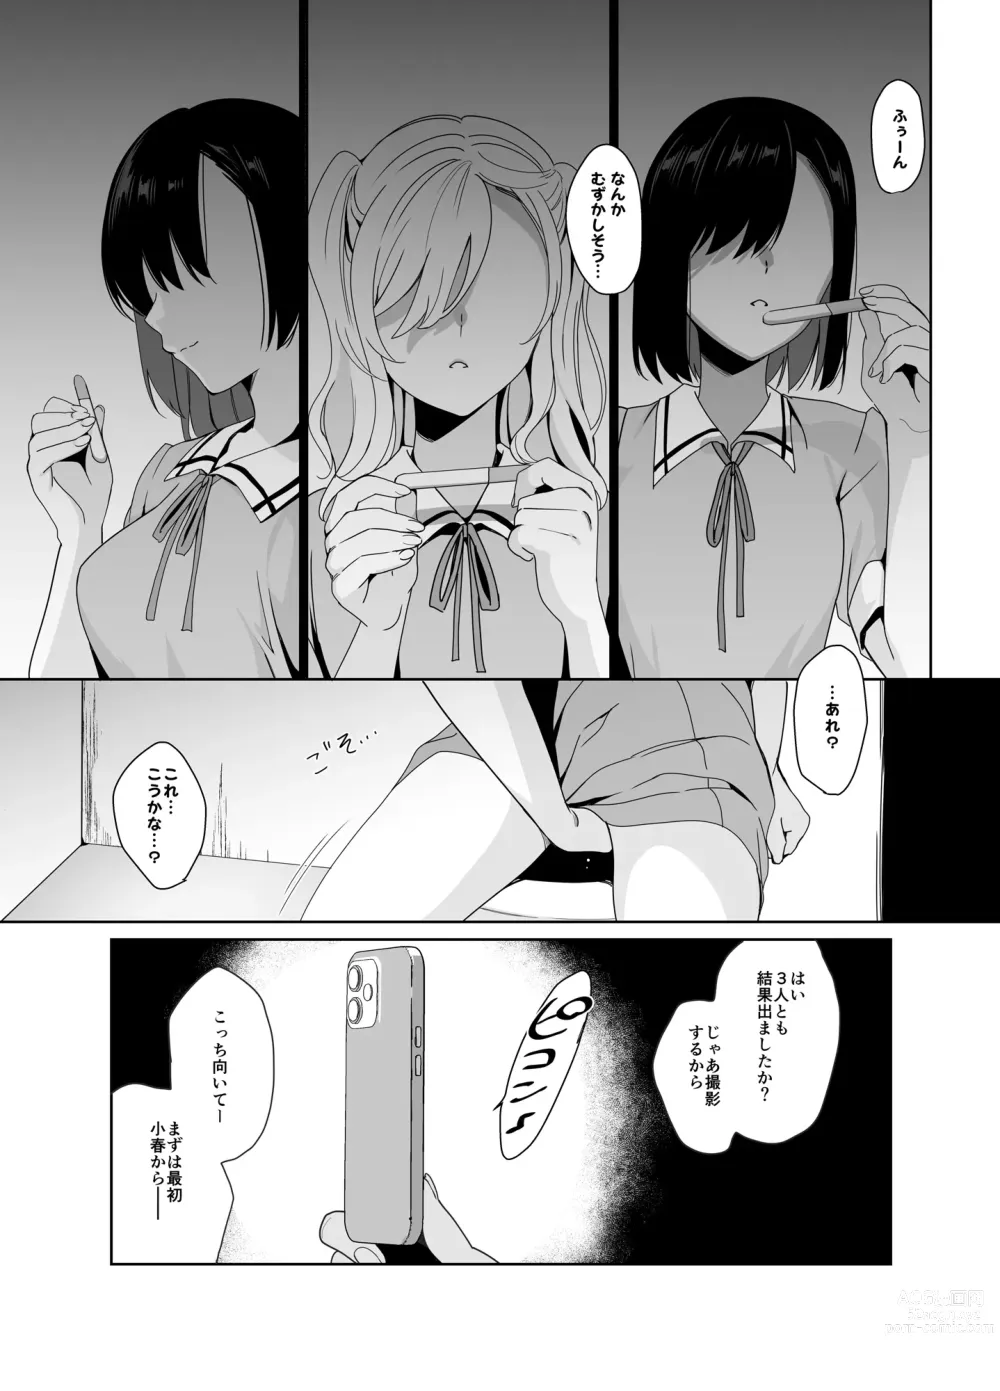 Page 190 of manga 白百合姉妹攻略総集編